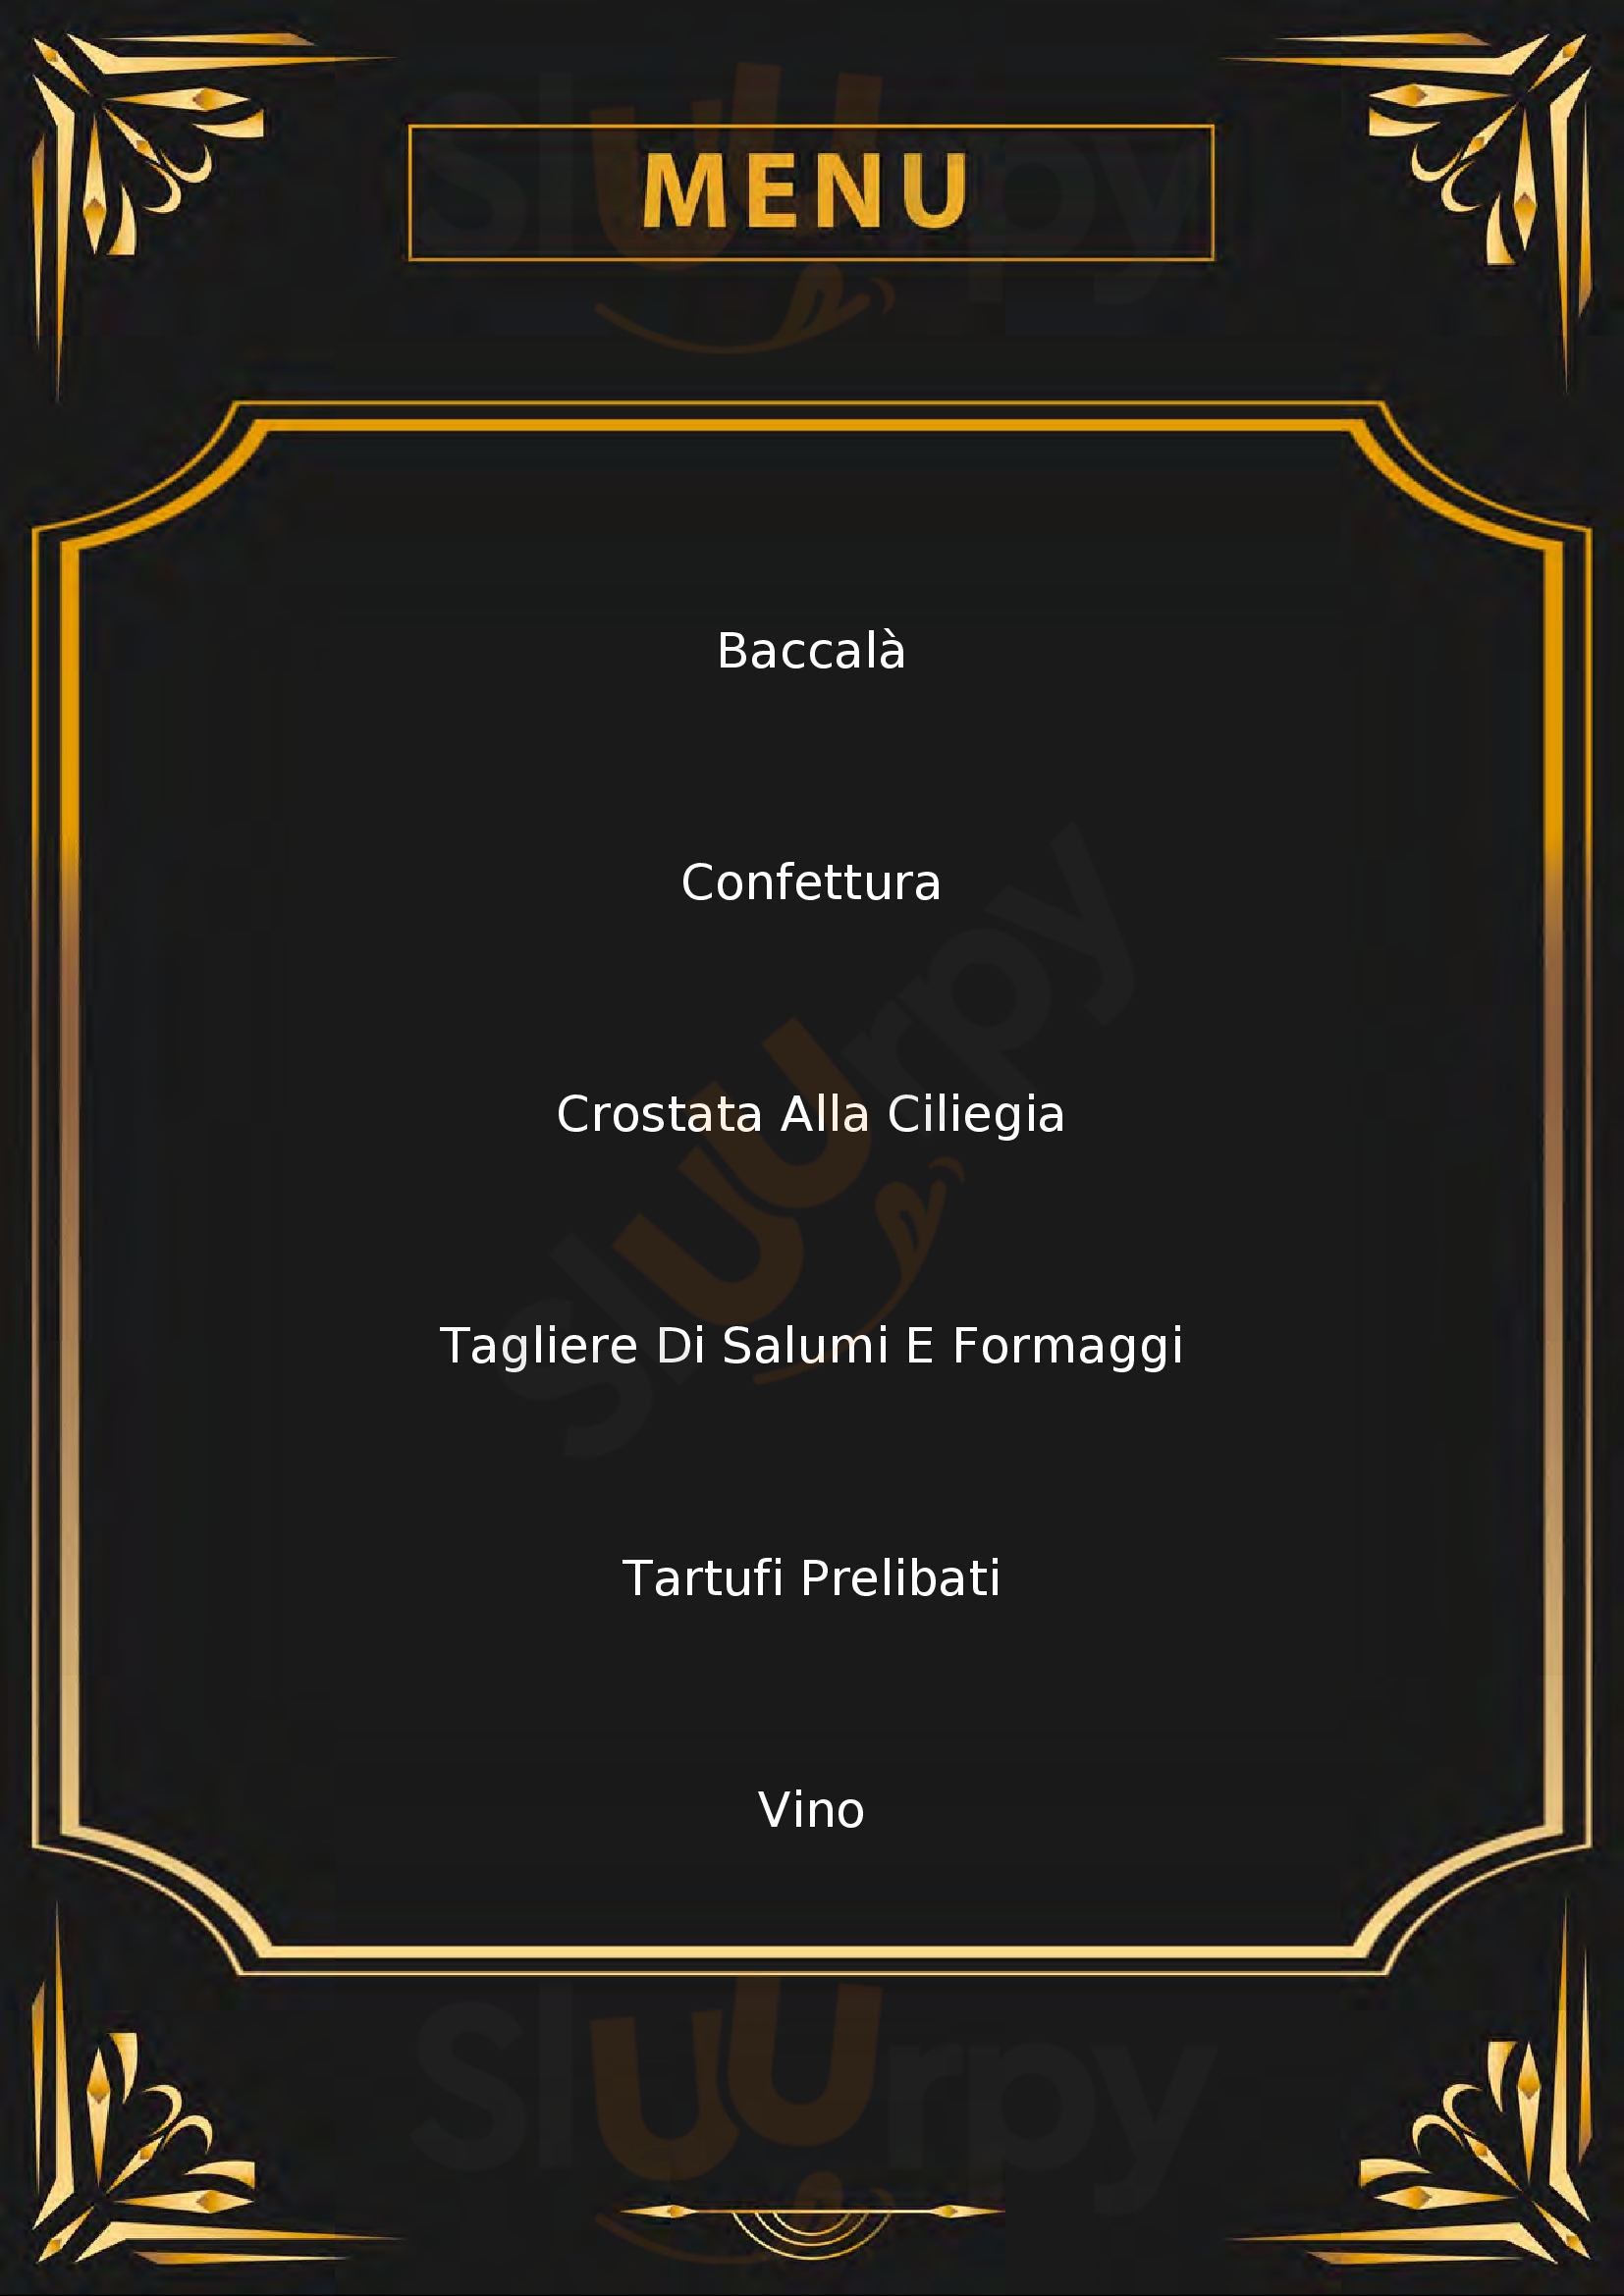 Gastronomia del Perugino Perugia menù 1 pagina